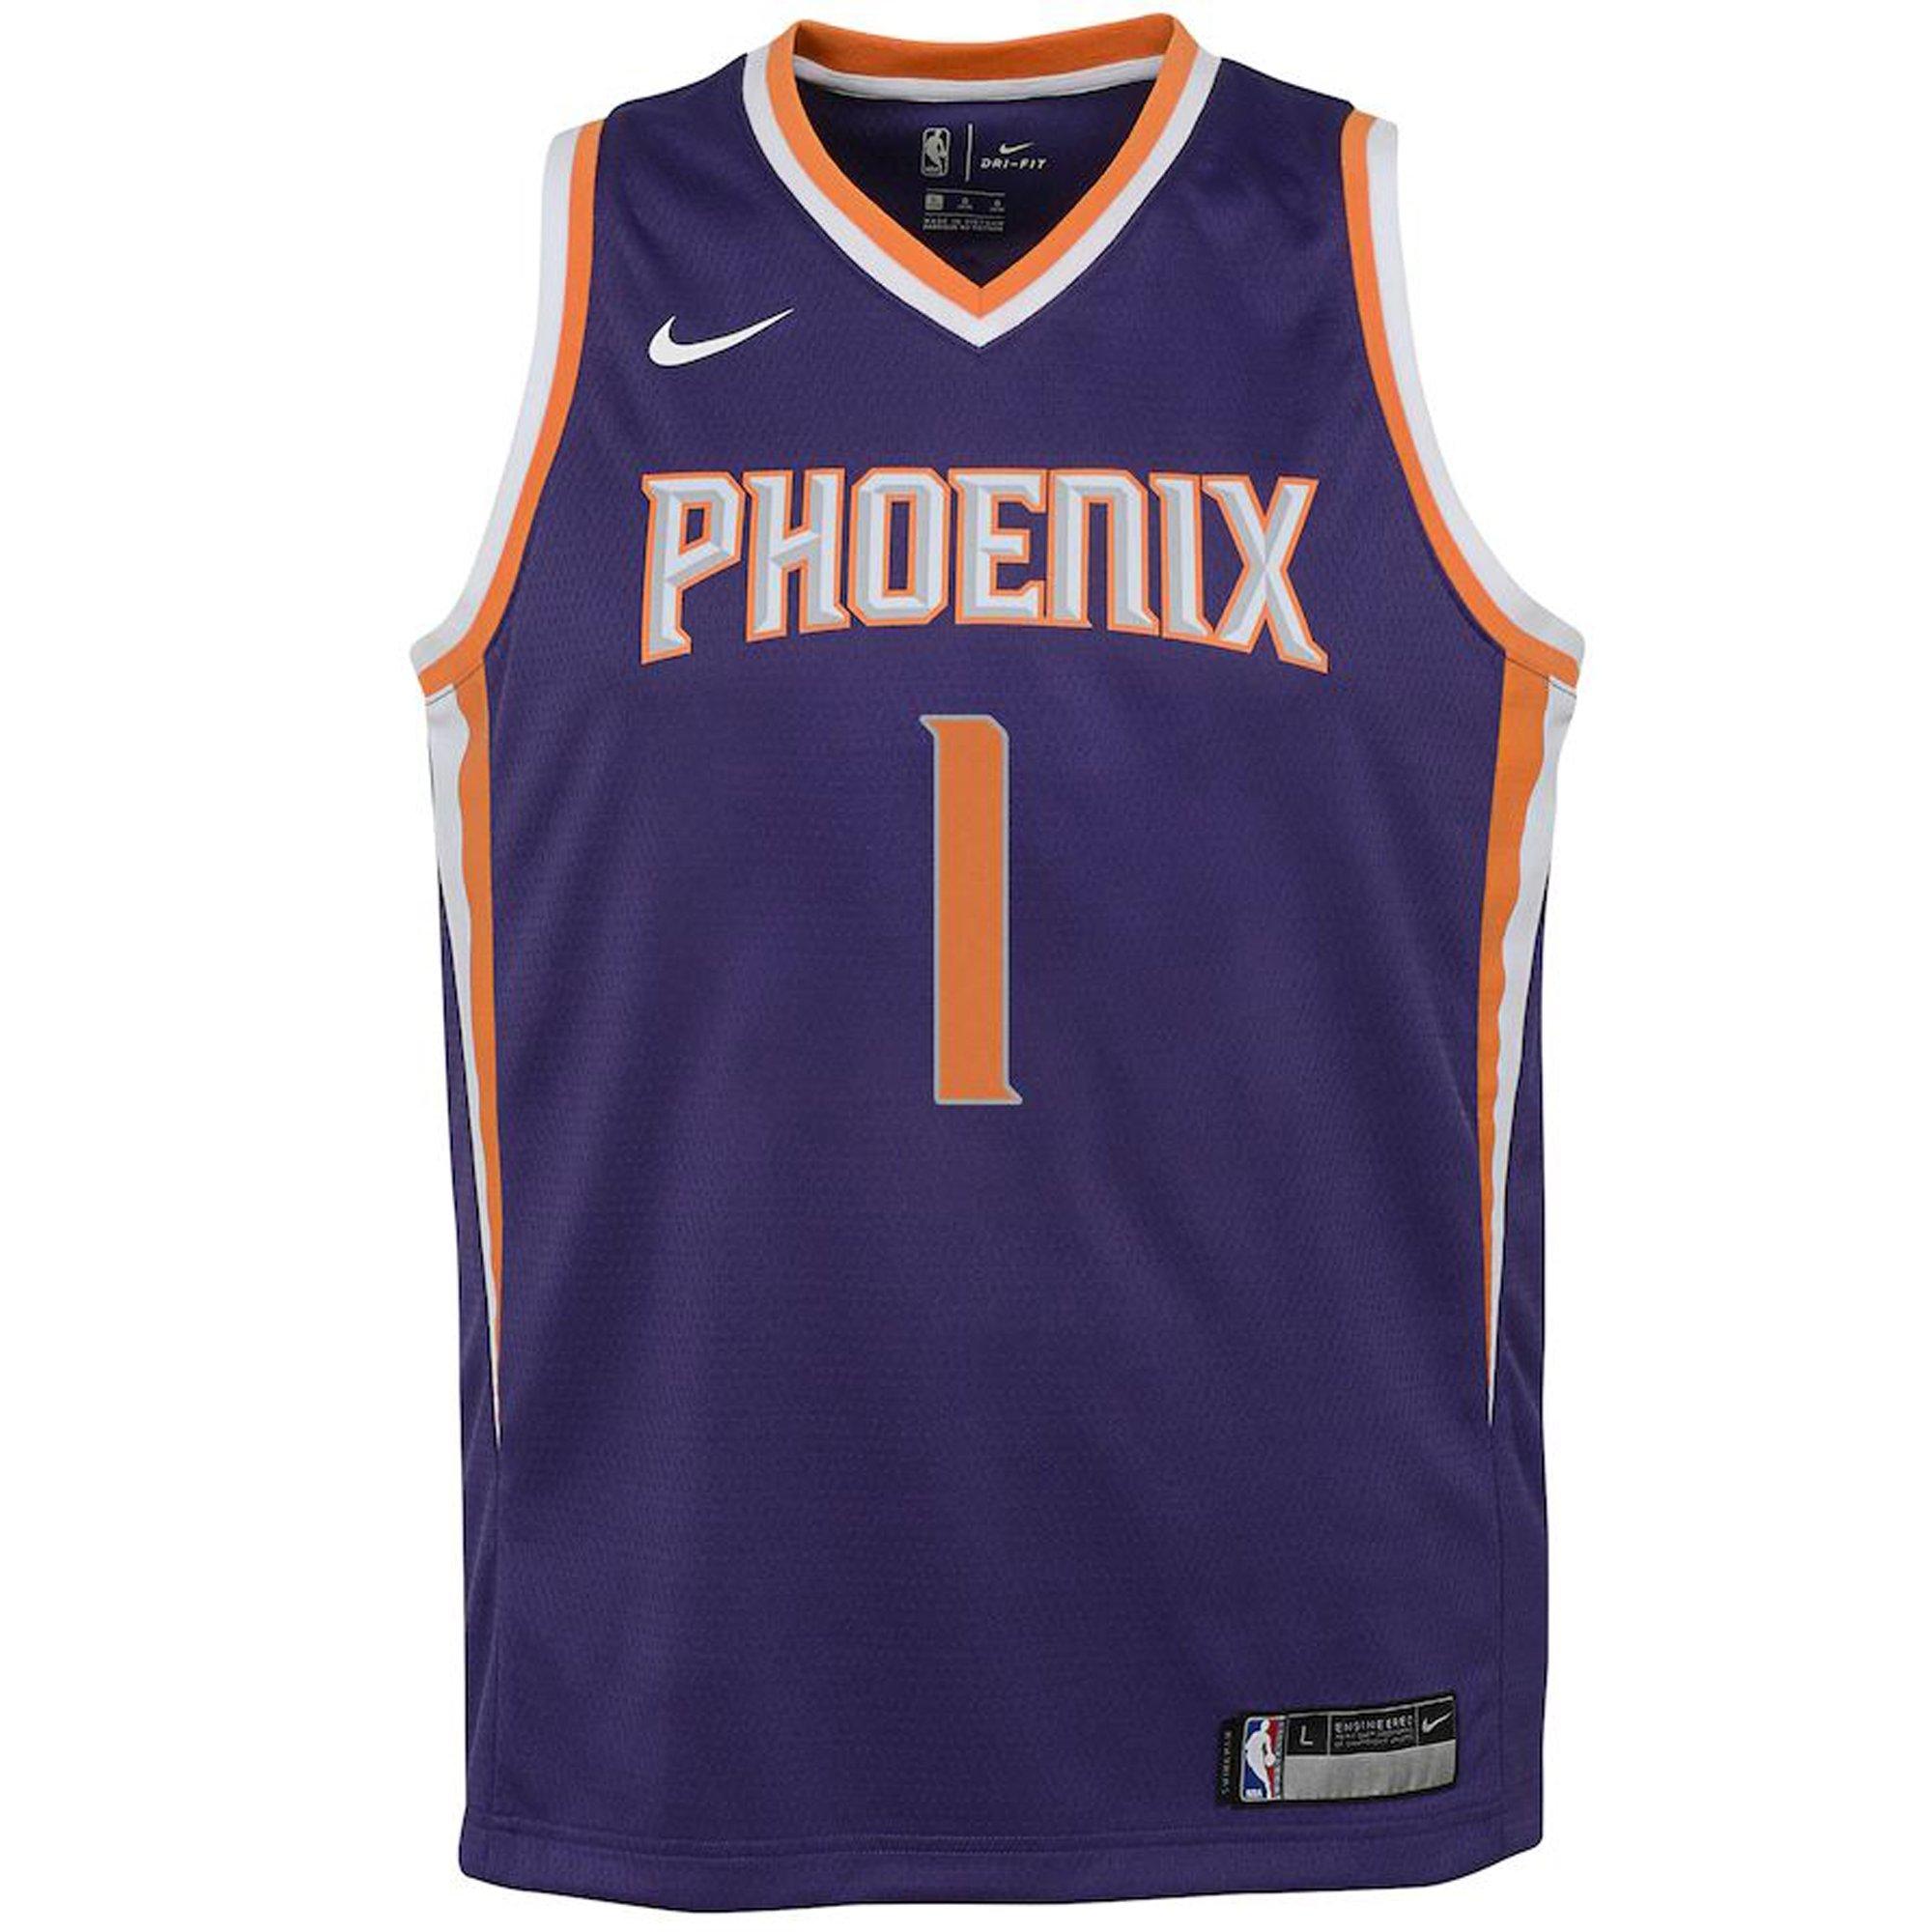 Phoenix Suns Nike City Edition Swingman Jersey 22 - DkTeal - Devin Booker -  Youth